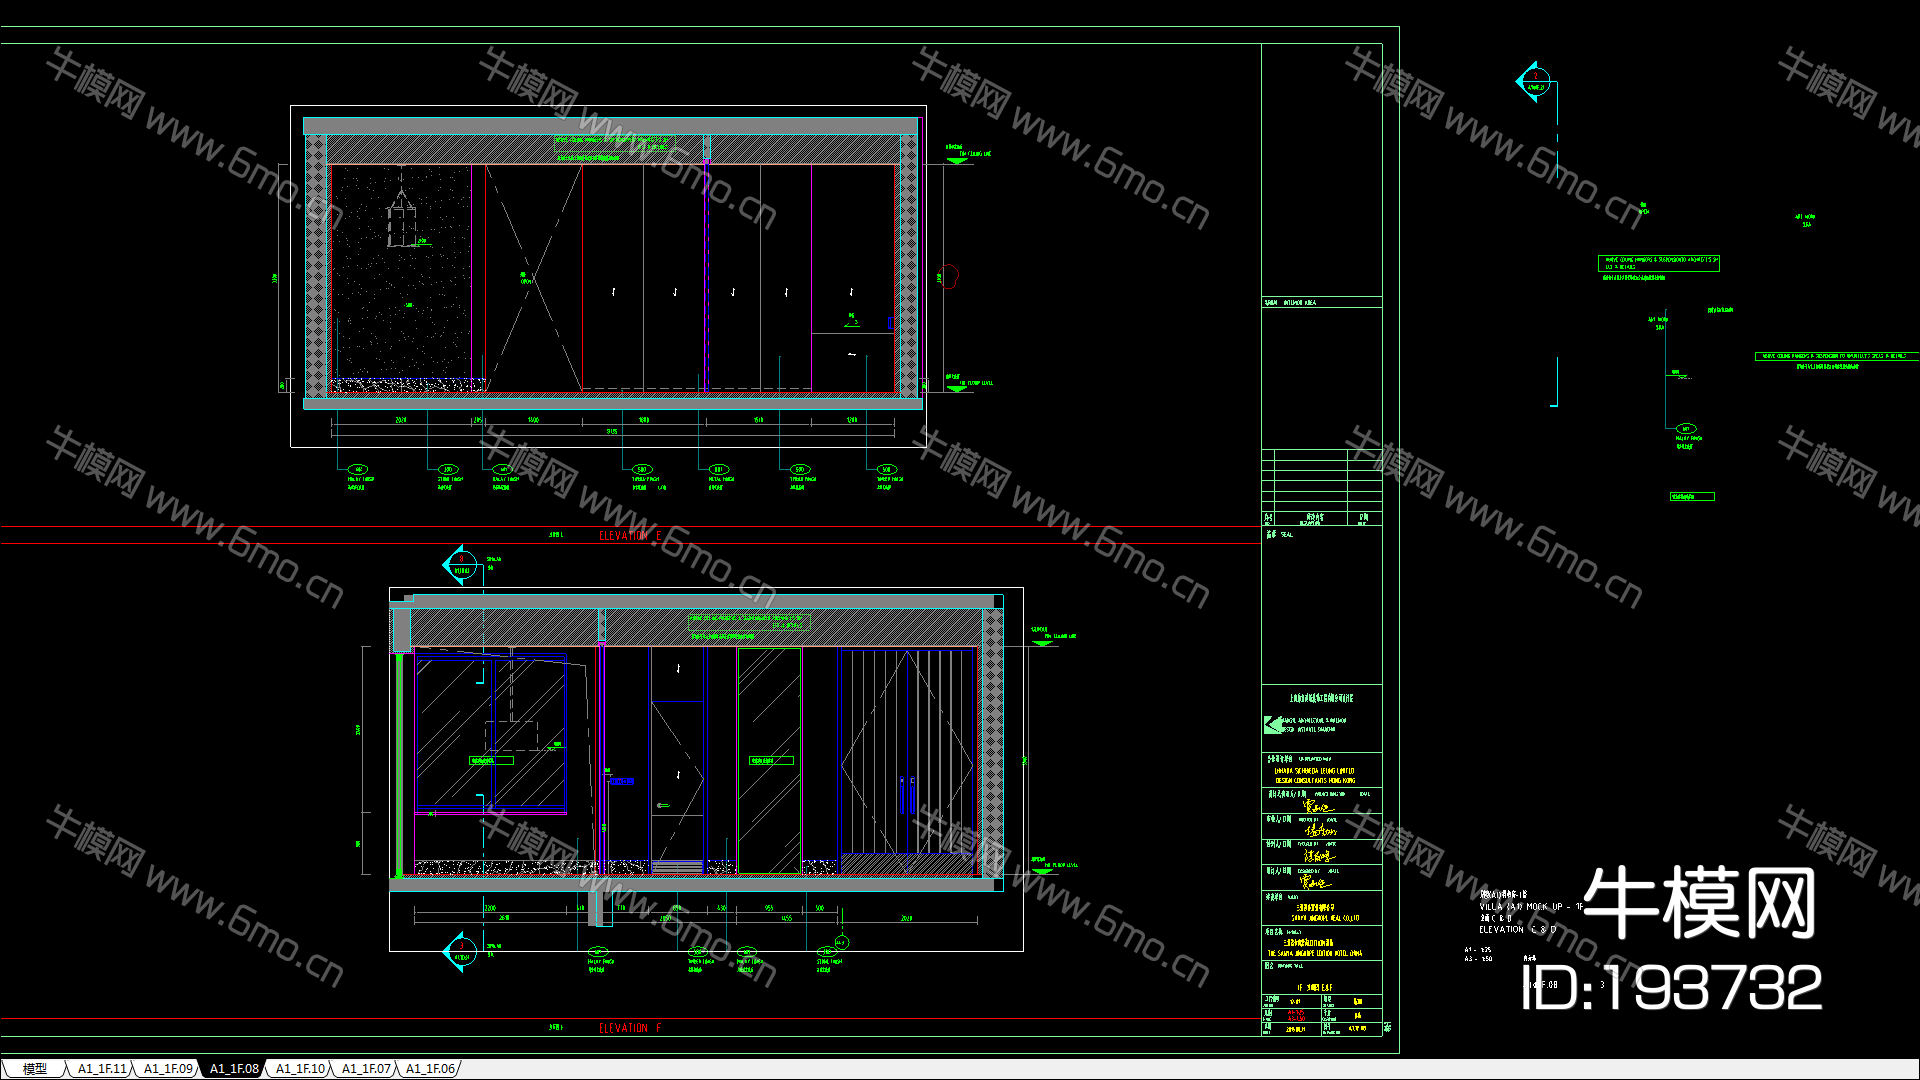 【新加坡SCDA设计】三亚艾迪逊A+B户型私人别墅样板间丨建筑效果图+效果图+CAD施工图